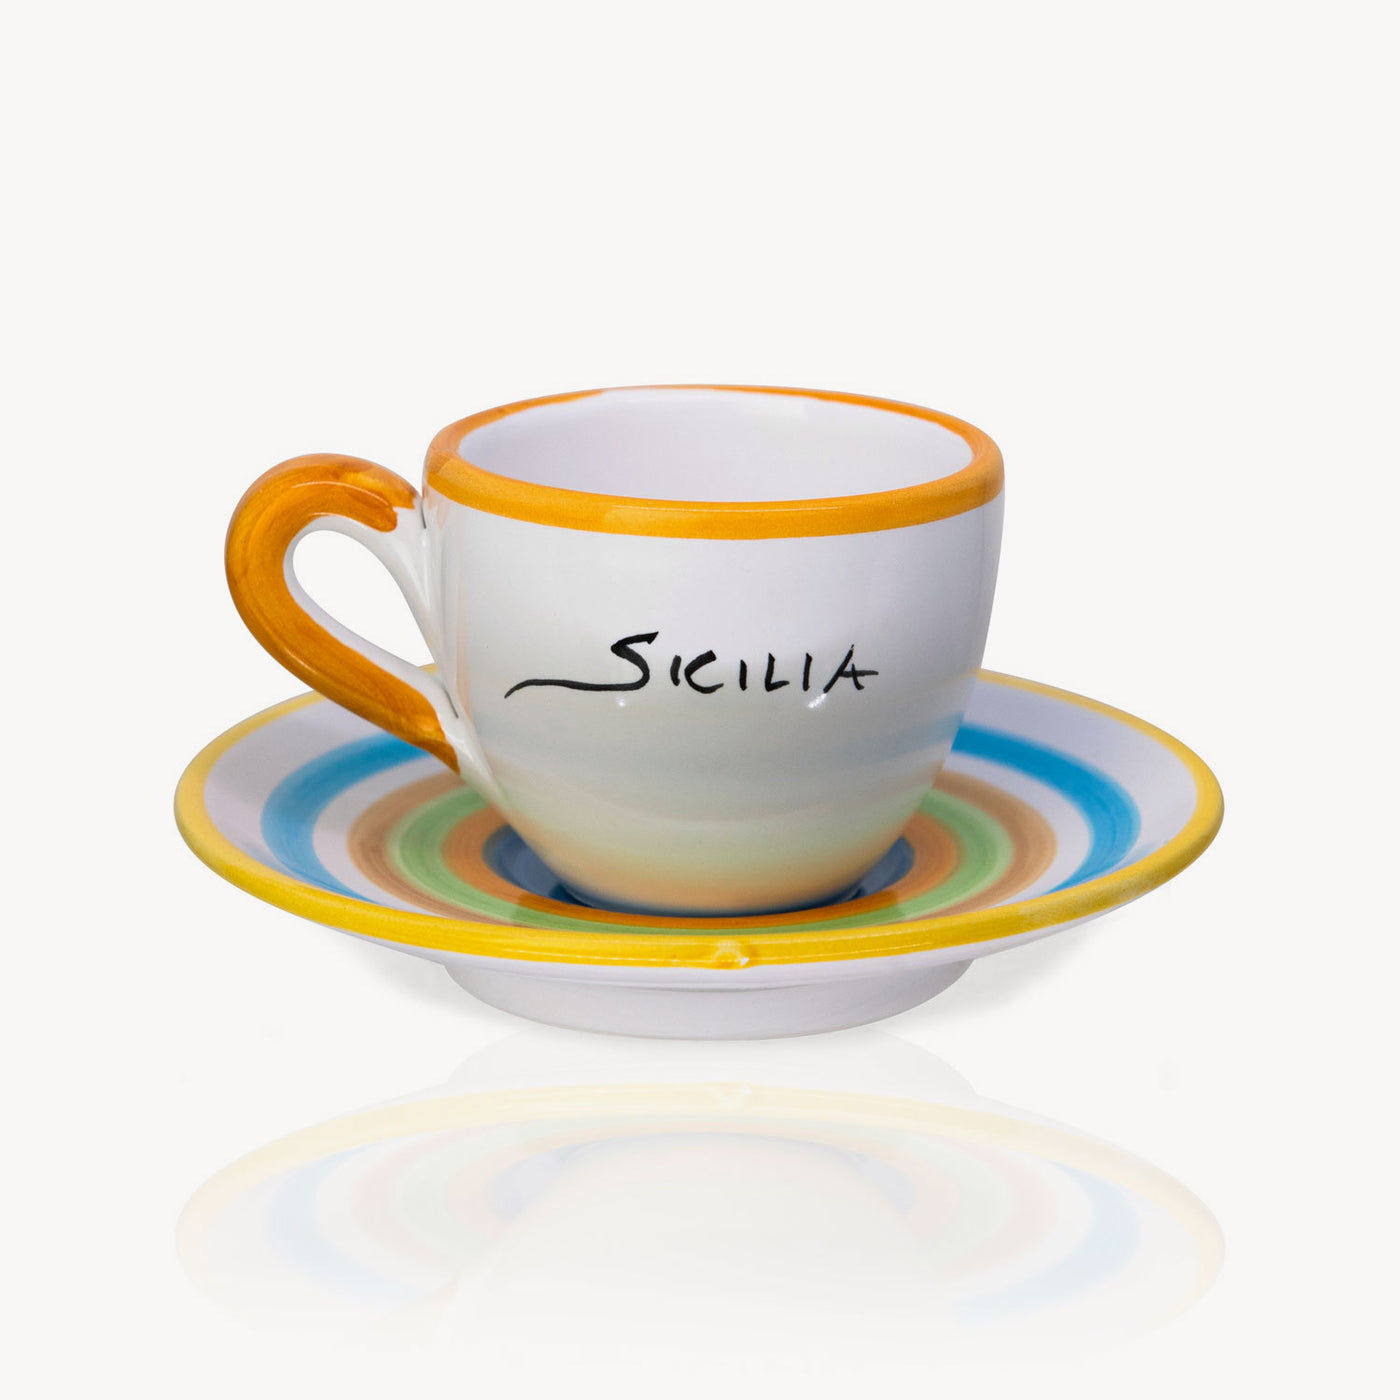 "Sicilia" - Tasse à café peinte à la main